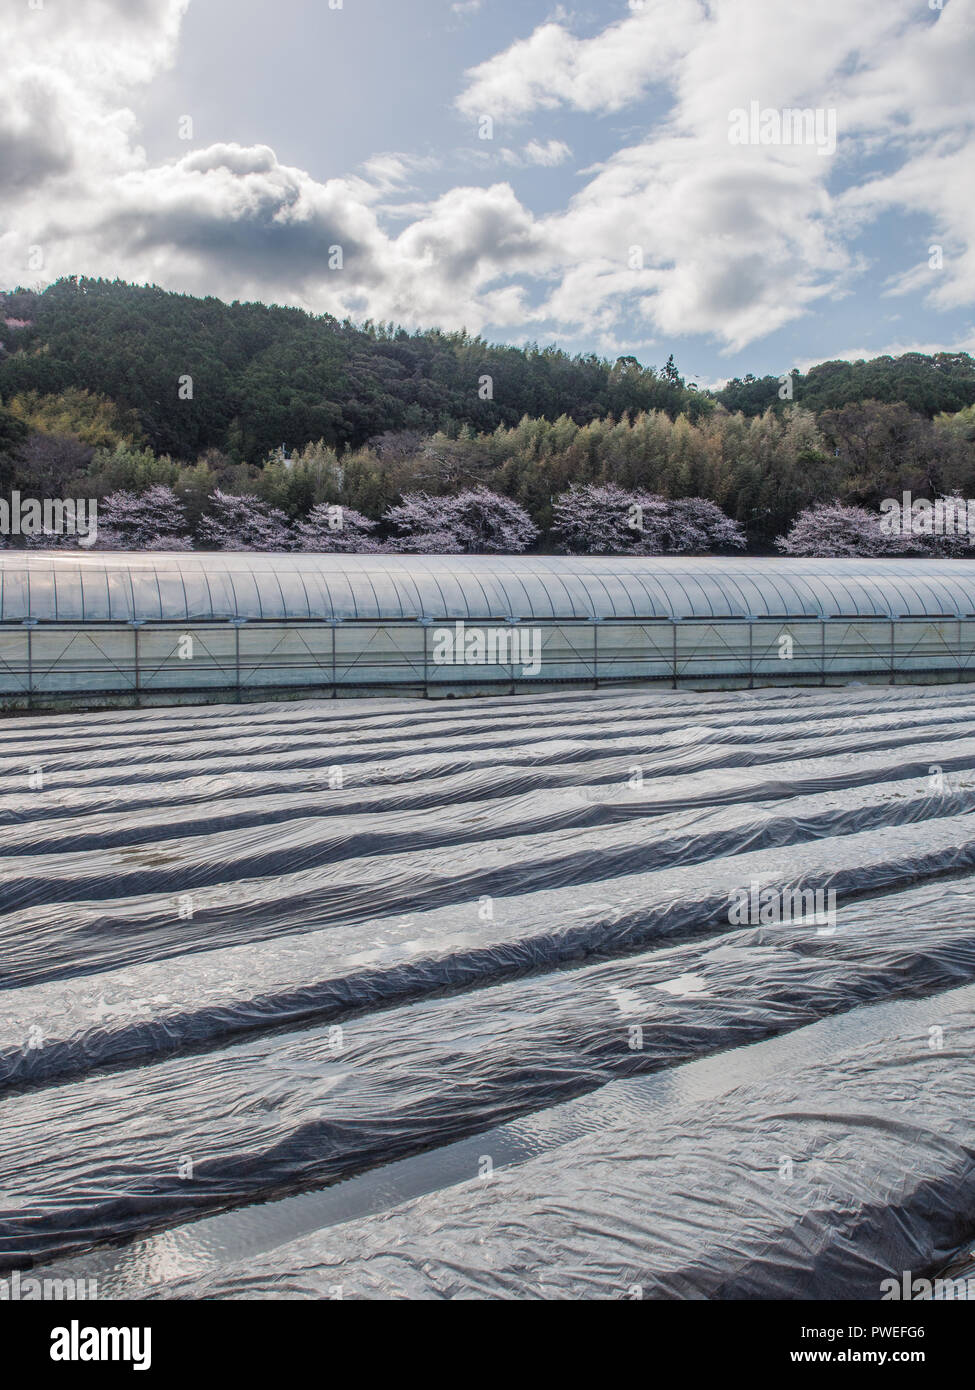 Tunnel en plastique et en plastique maison de l'horticulture, avec Hanami, Sakura en fleurs de cerisier, l'agriculture industrielle, paysage rural, Kochi, Shikoku, Japon Banque D'Images